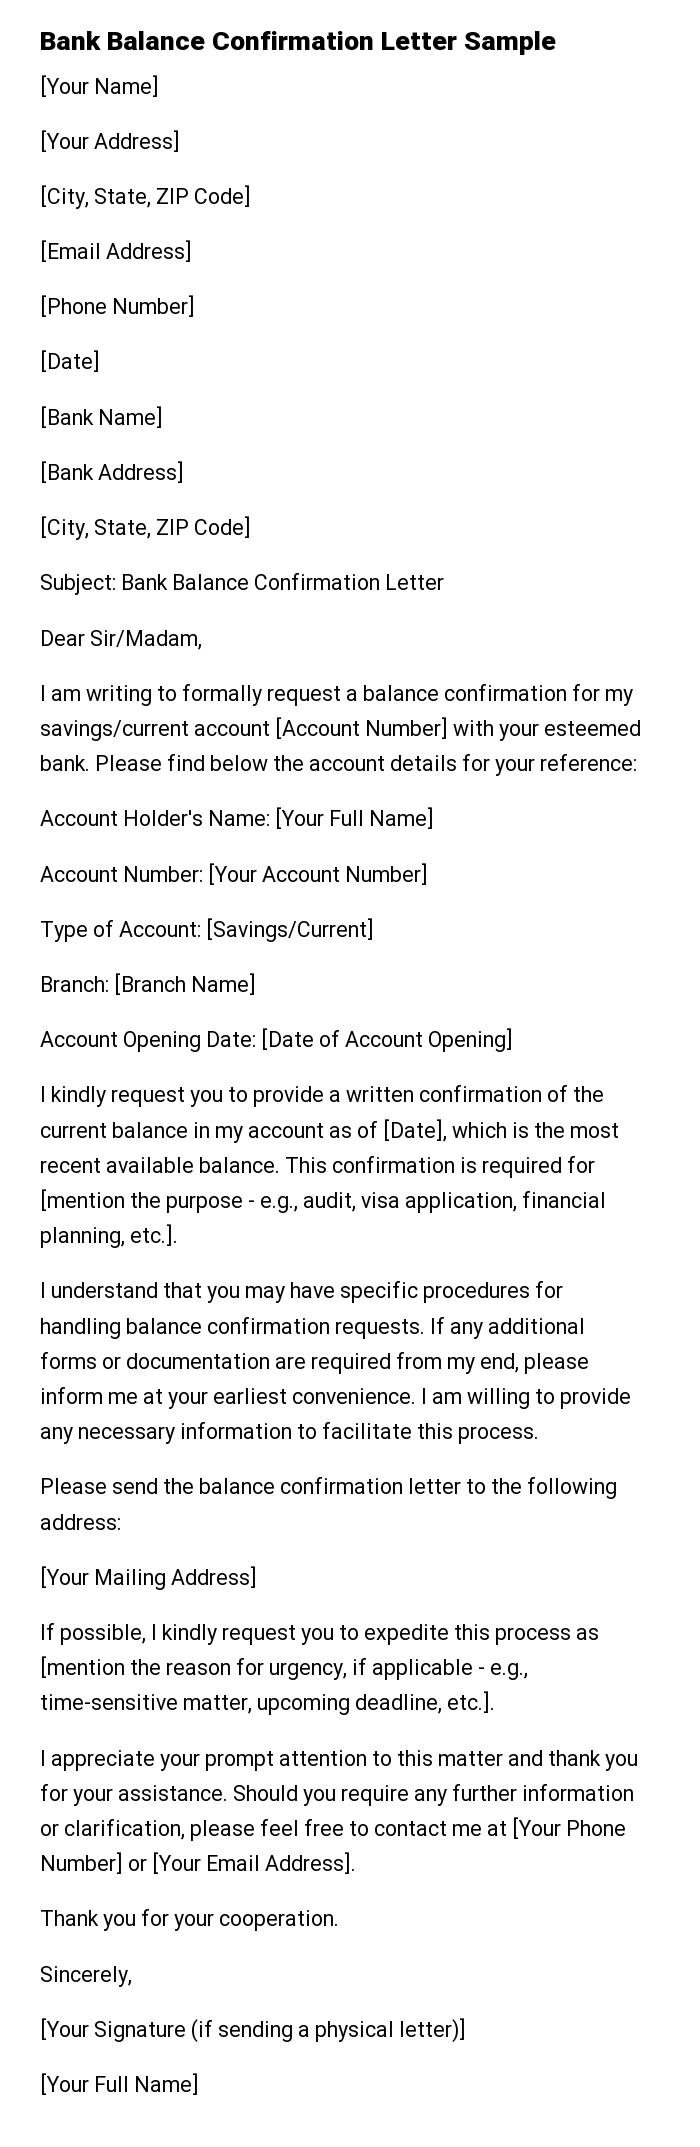 Bank Balance Confirmation Letter Sample